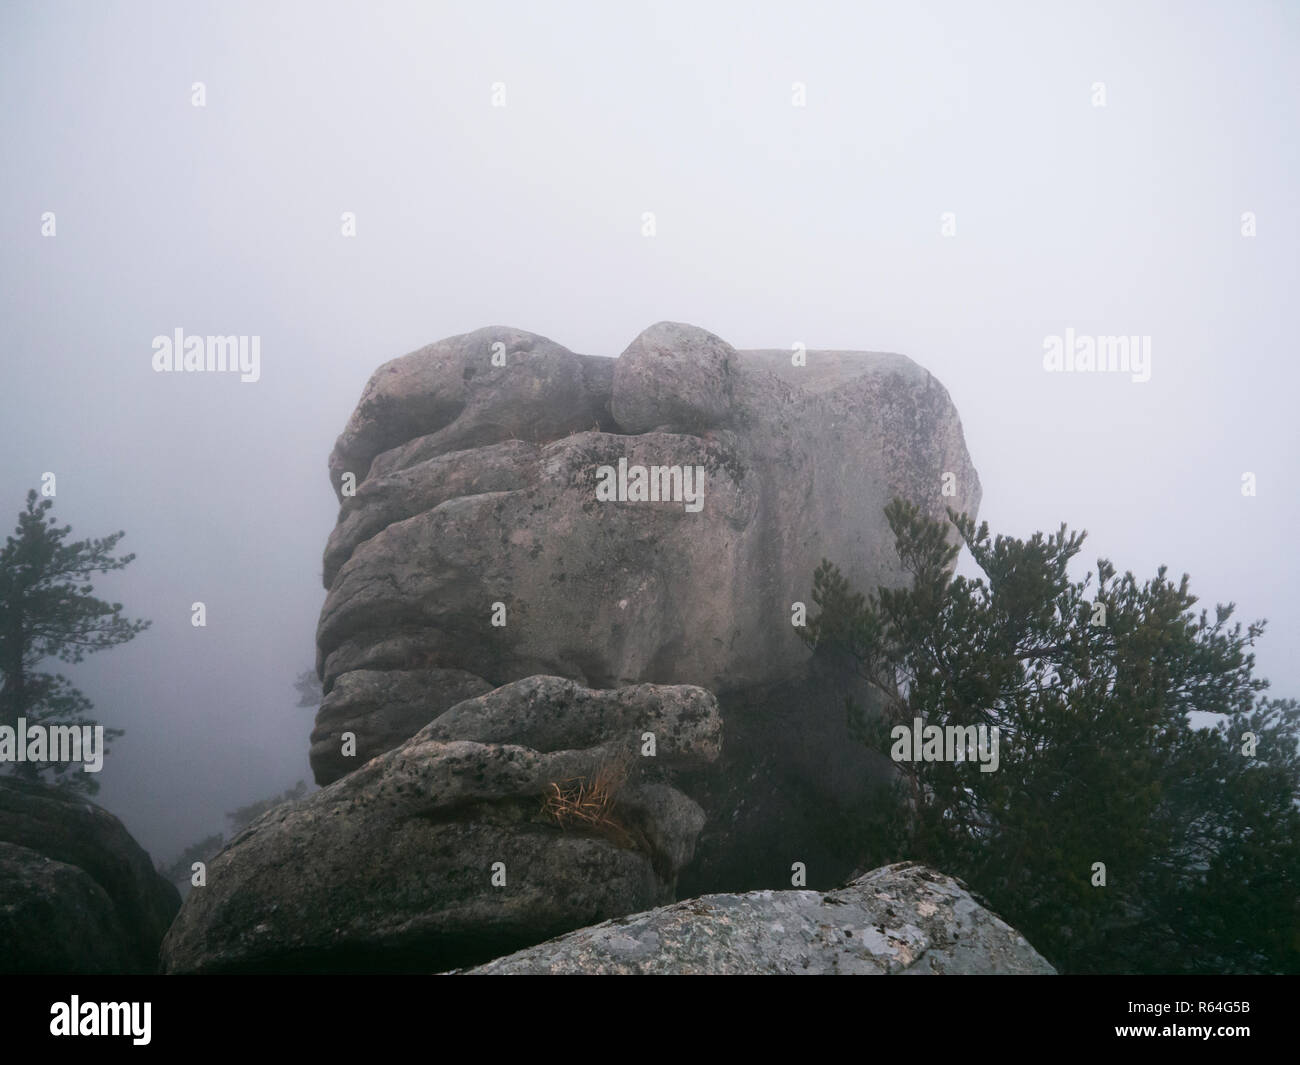 Le montagne in cloud. Le grandi rocce nella nebbia. Seoraksan National Park, Corea del Sud Foto Stock